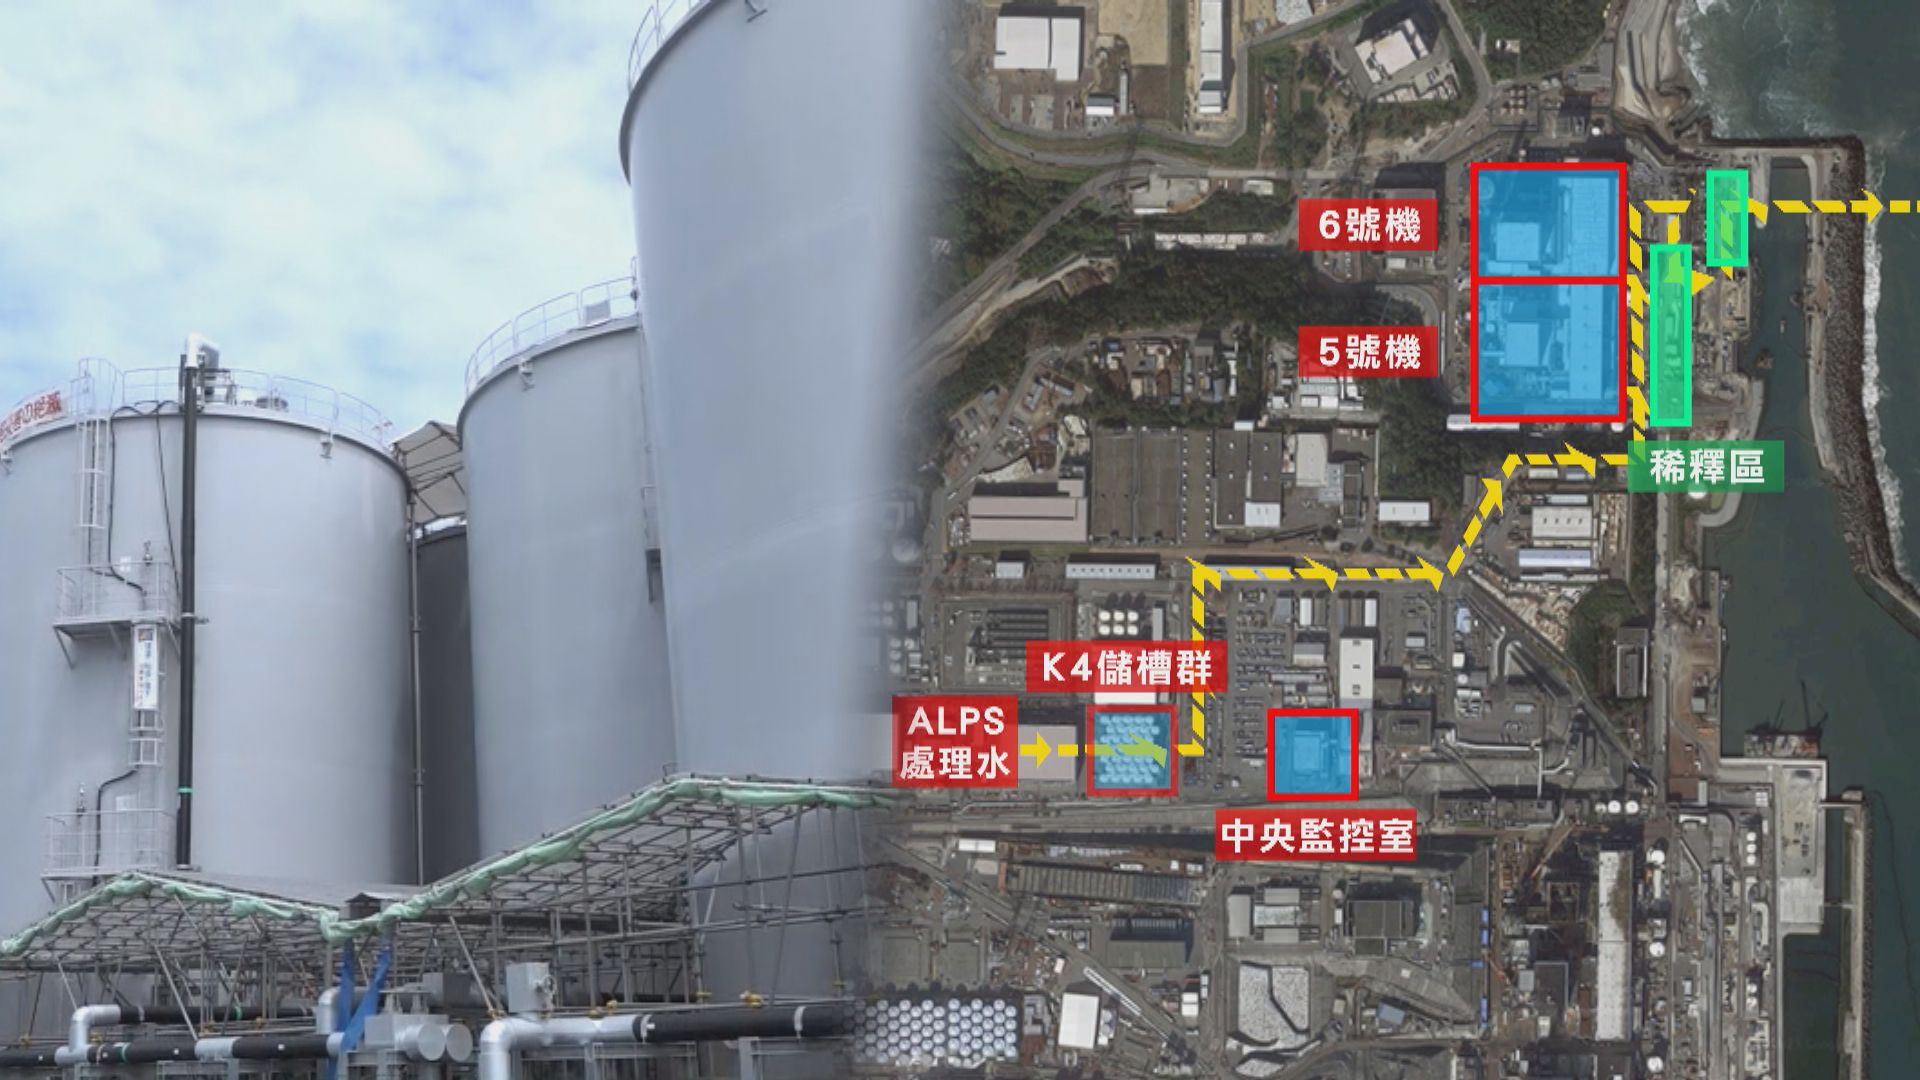 本台進入福島核電廠 東電未有回應如何量度核污水其他放射物質 